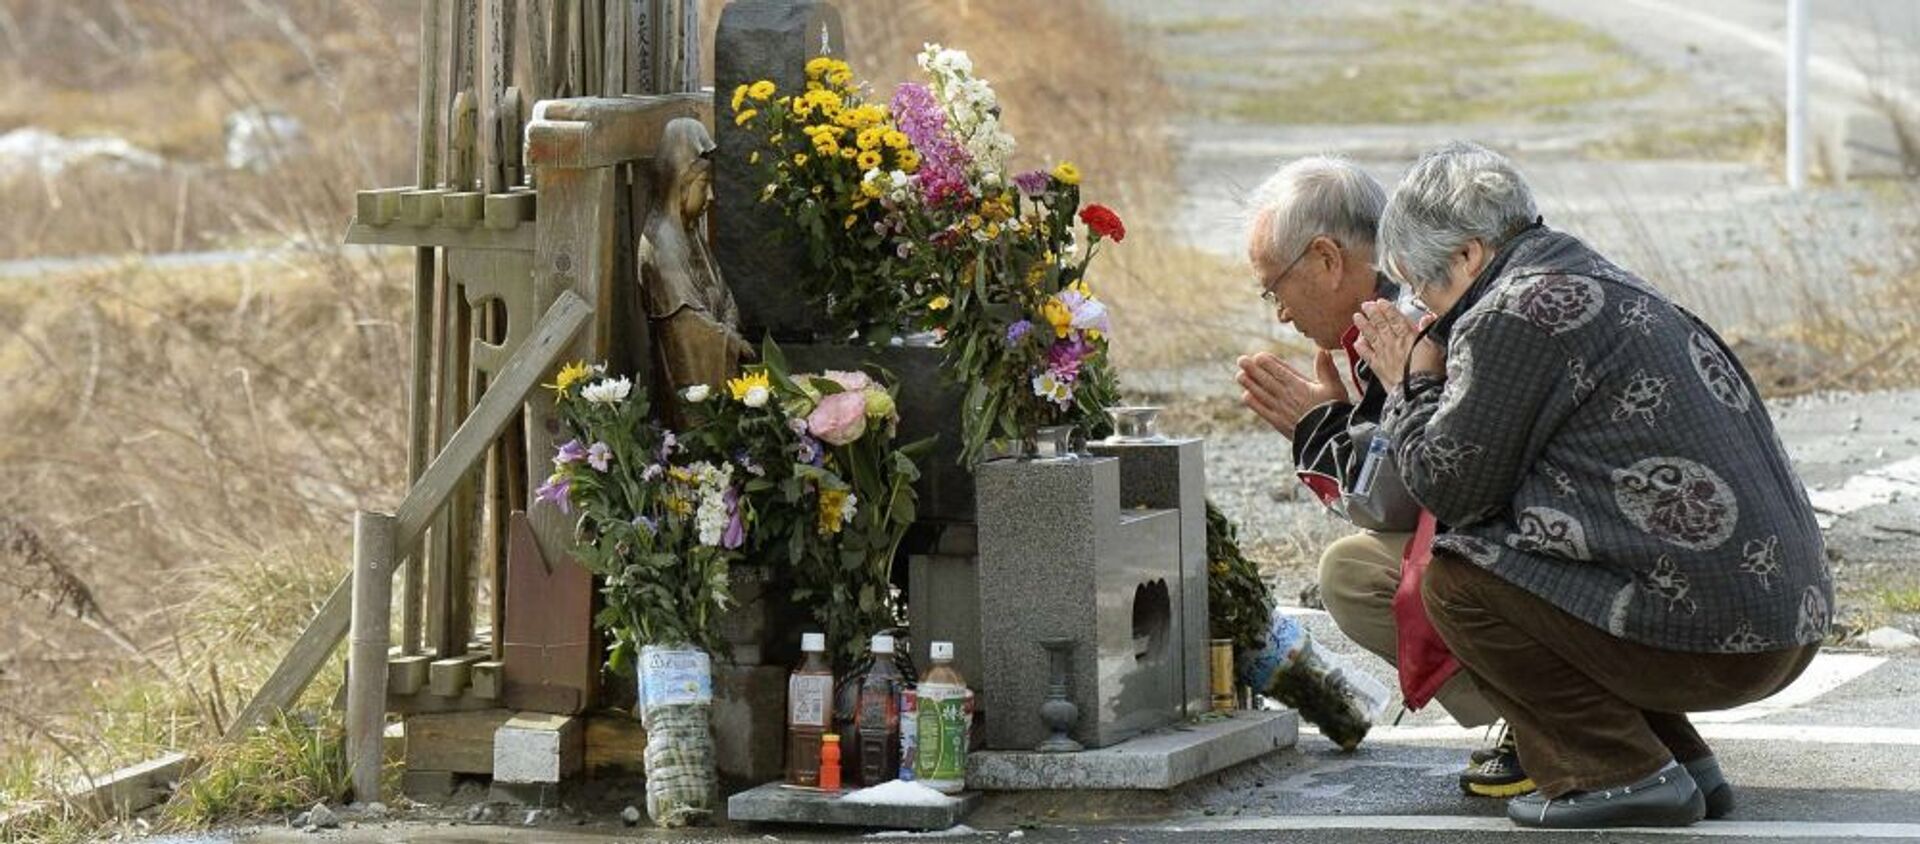 Люди молятся за погибших во время землетрясения и цунами в Японии в 2011 году  - Sputnik 日本, 1920, 29.11.2020